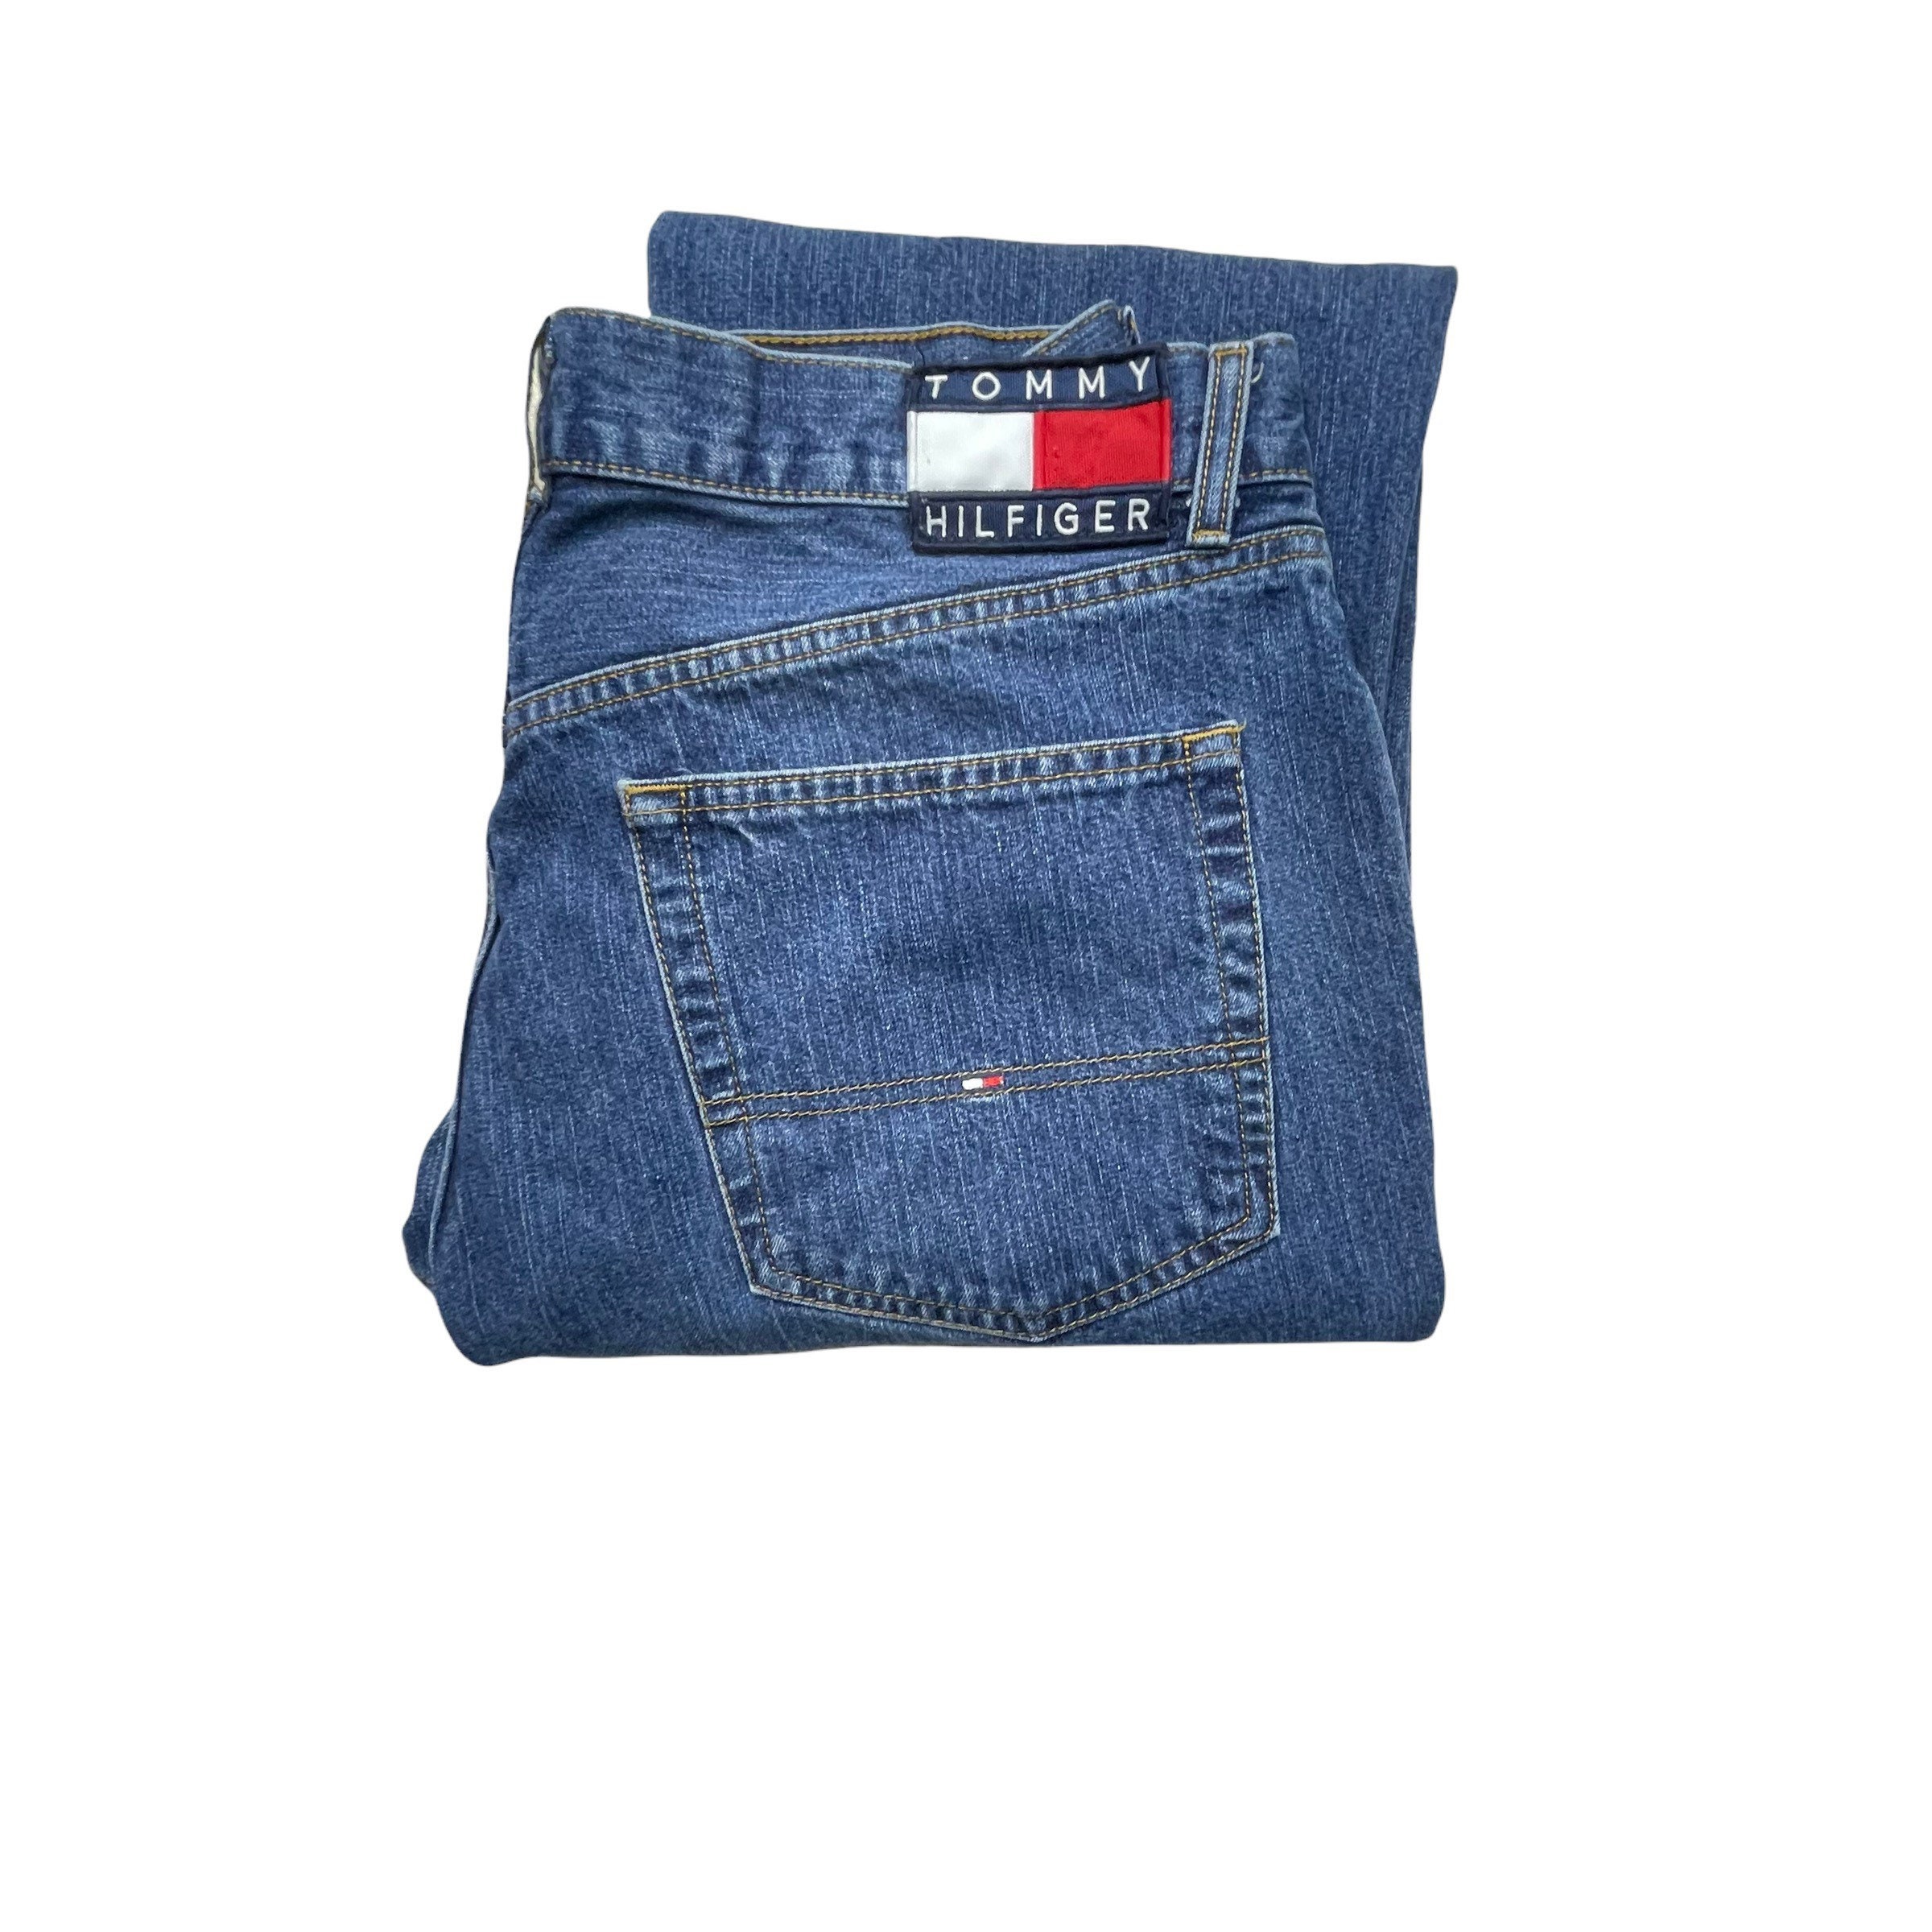 Buy Vintage 90's Men's Tommy Hilfiger Denim Jeans Flag Online in India